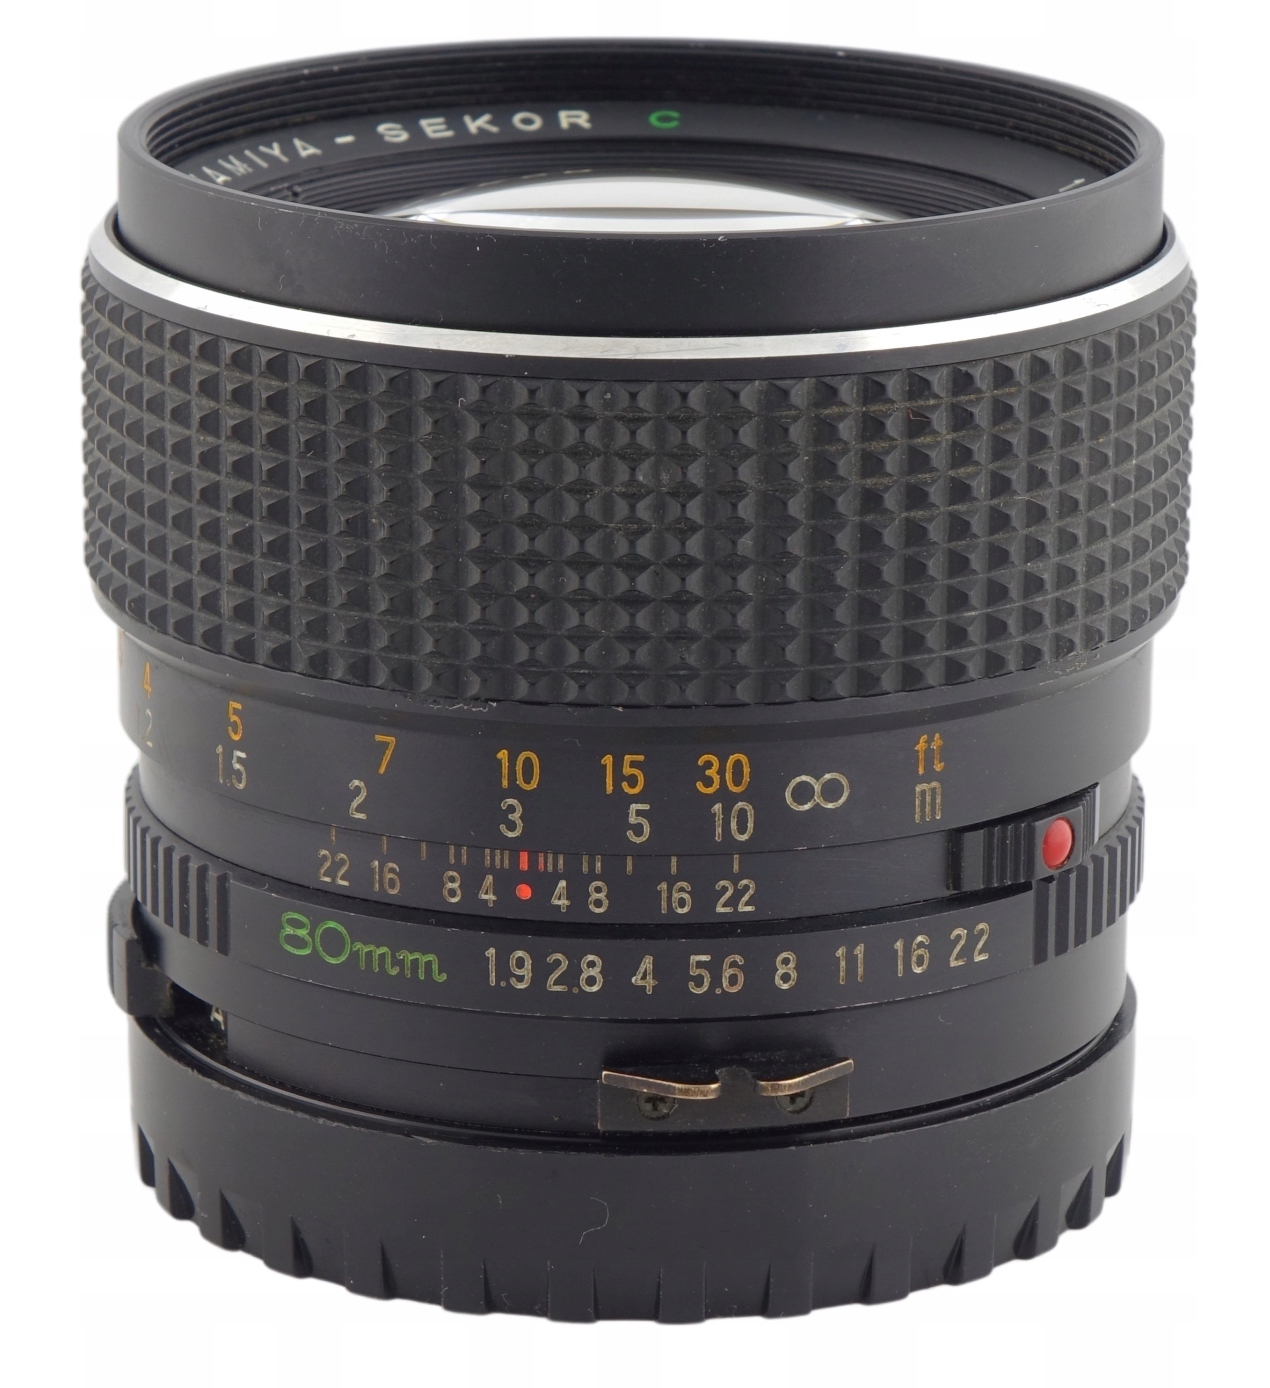 Mamiya SEKOR C 1:1.9 80mm - レンズ(単焦点)